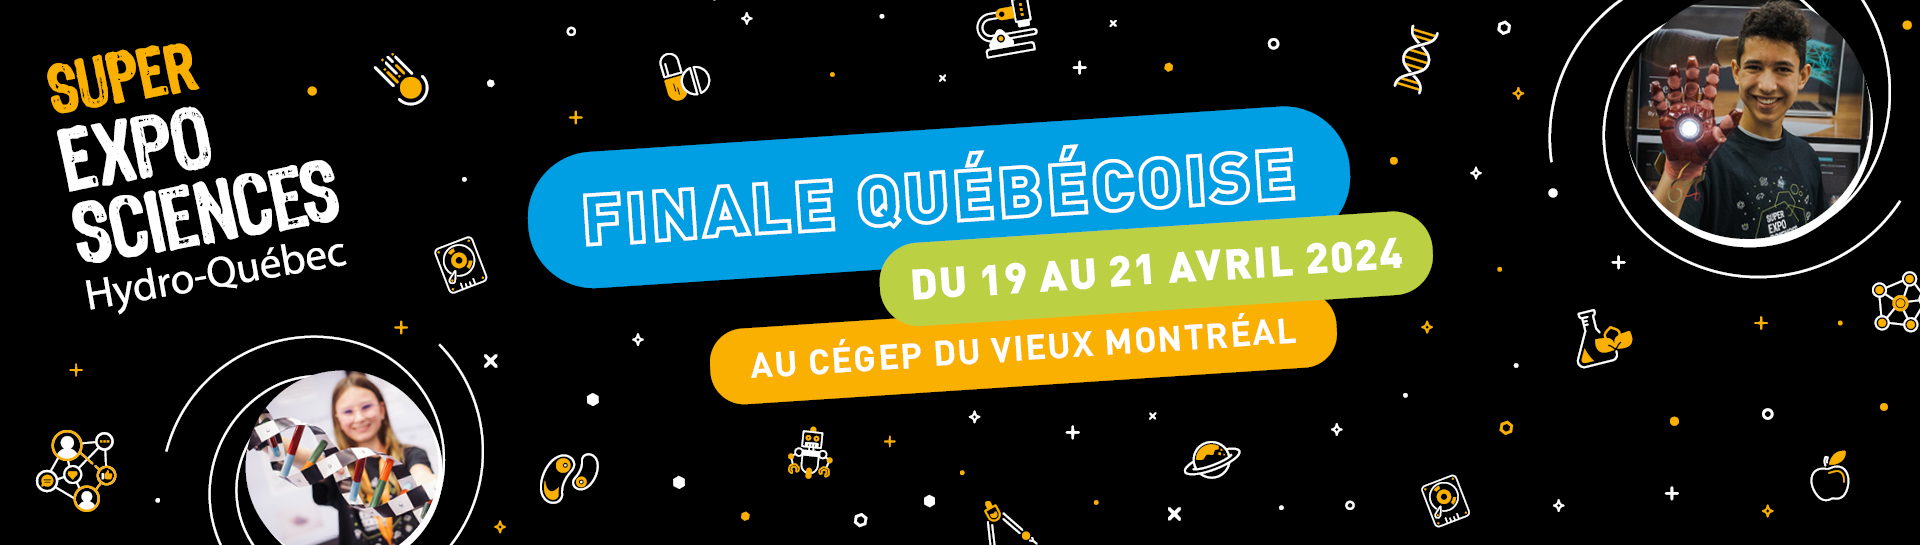 La finale québécoise de la Super Expo-sciences Hydro-Québec se tiendra au cégep du Vieux Montréal du 19 au 21 avril 2024